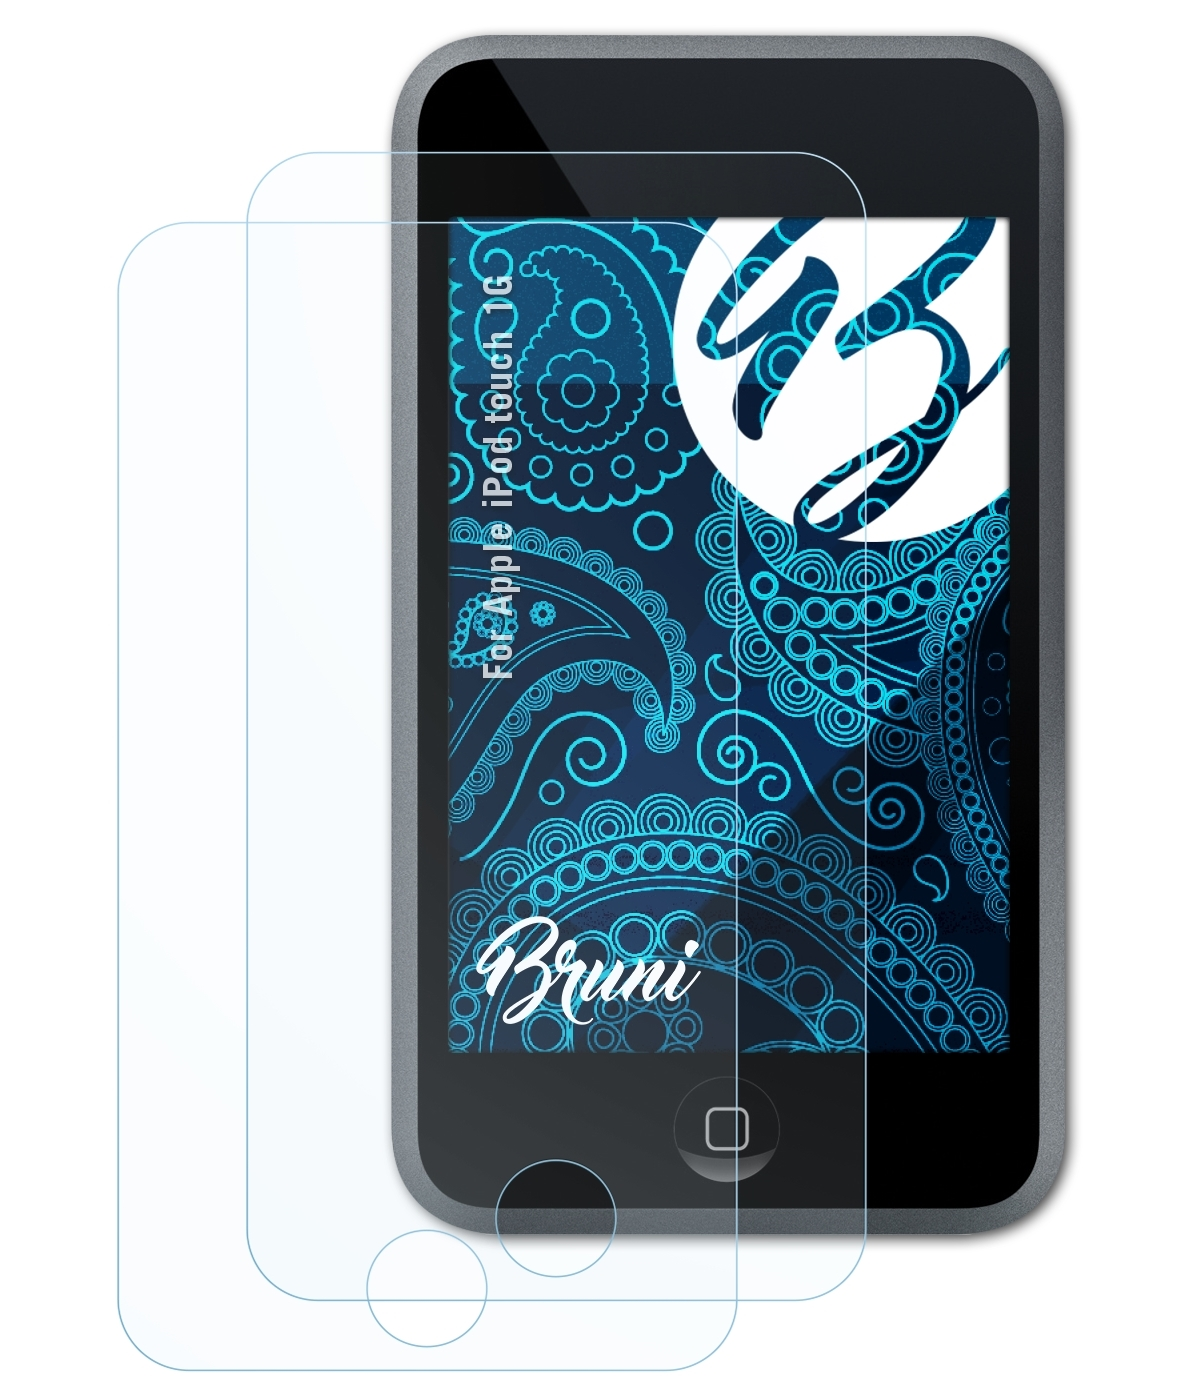 BRUNI 2x 1G) Apple Basics-Clear Schutzfolie(für touch iPod